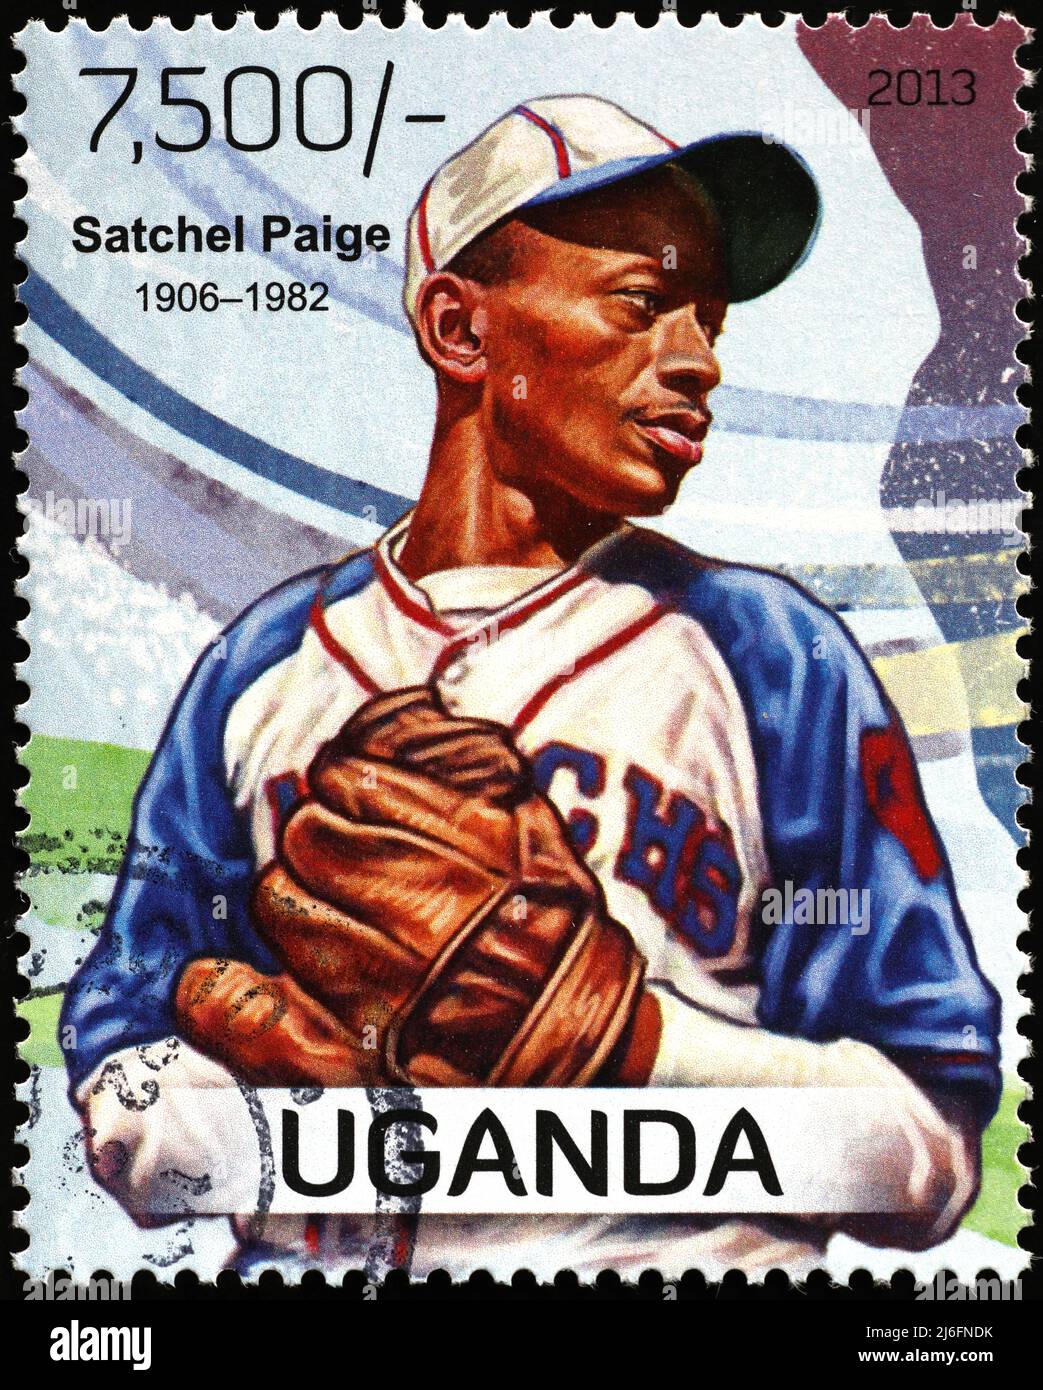 Il campione di baseball Satchel Paige sul francobollo Foto Stock